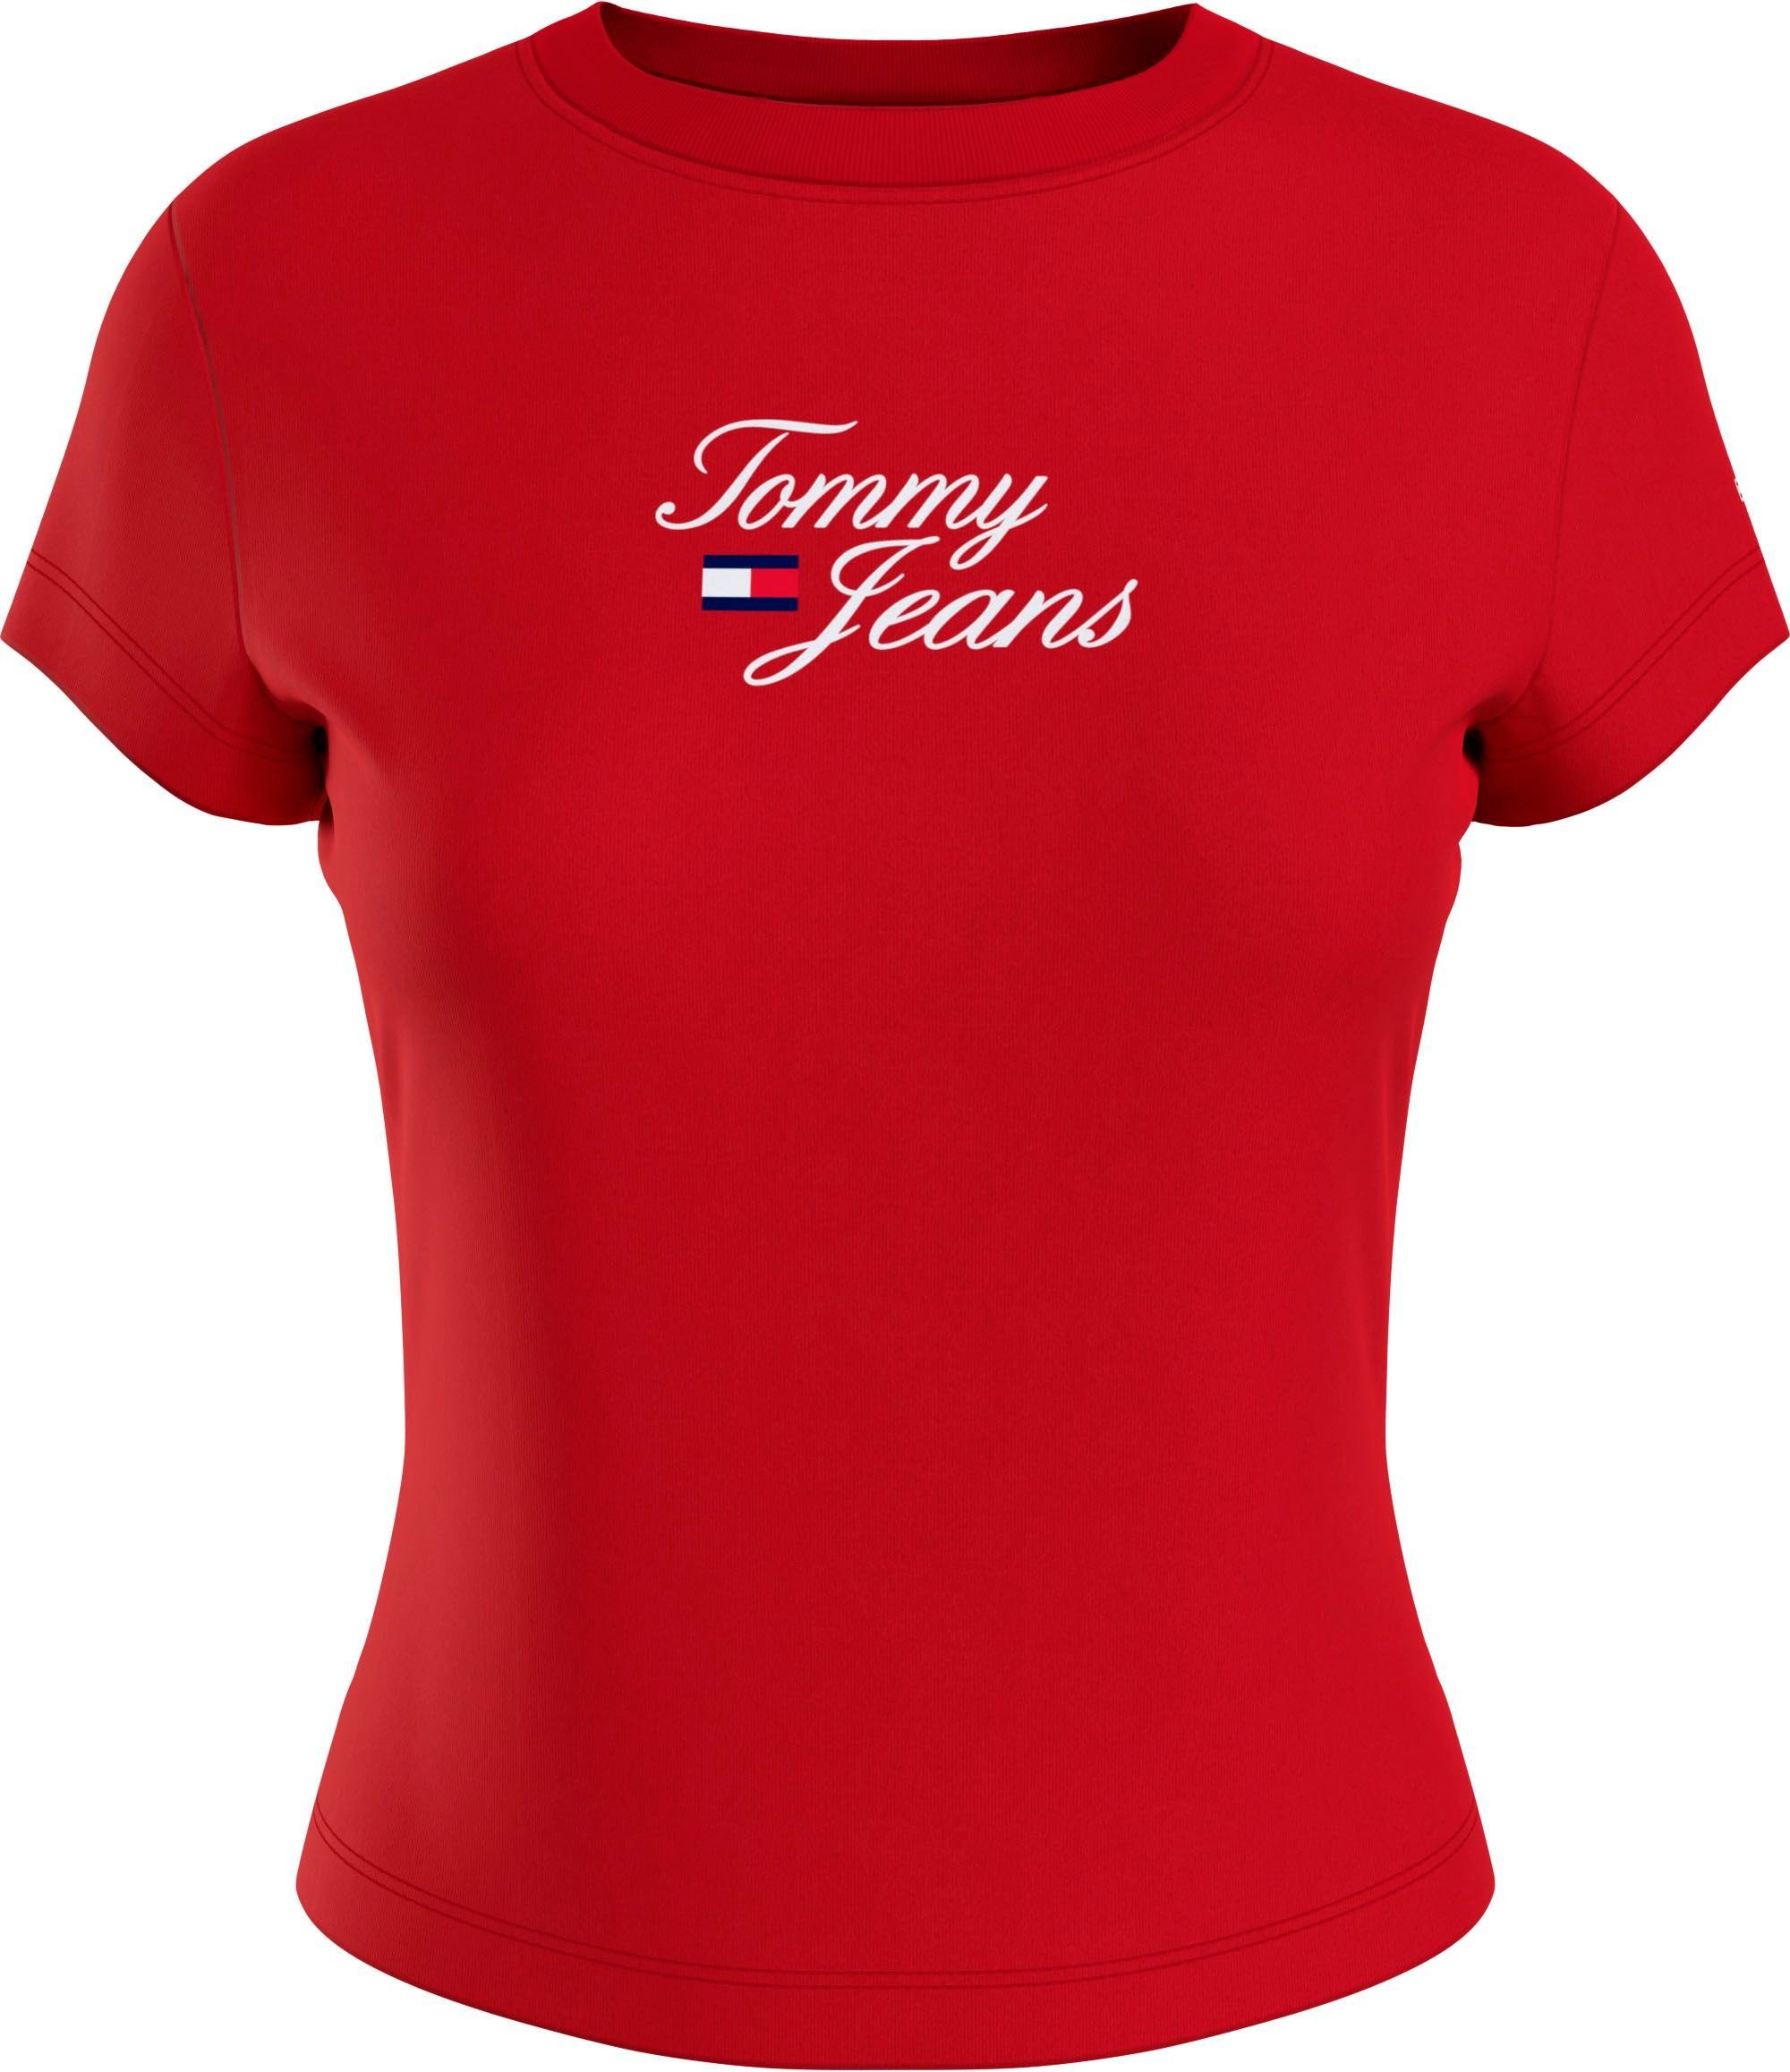 TOMMY JEANS Shirts für Damen online kaufen | OTTO | T-Shirts